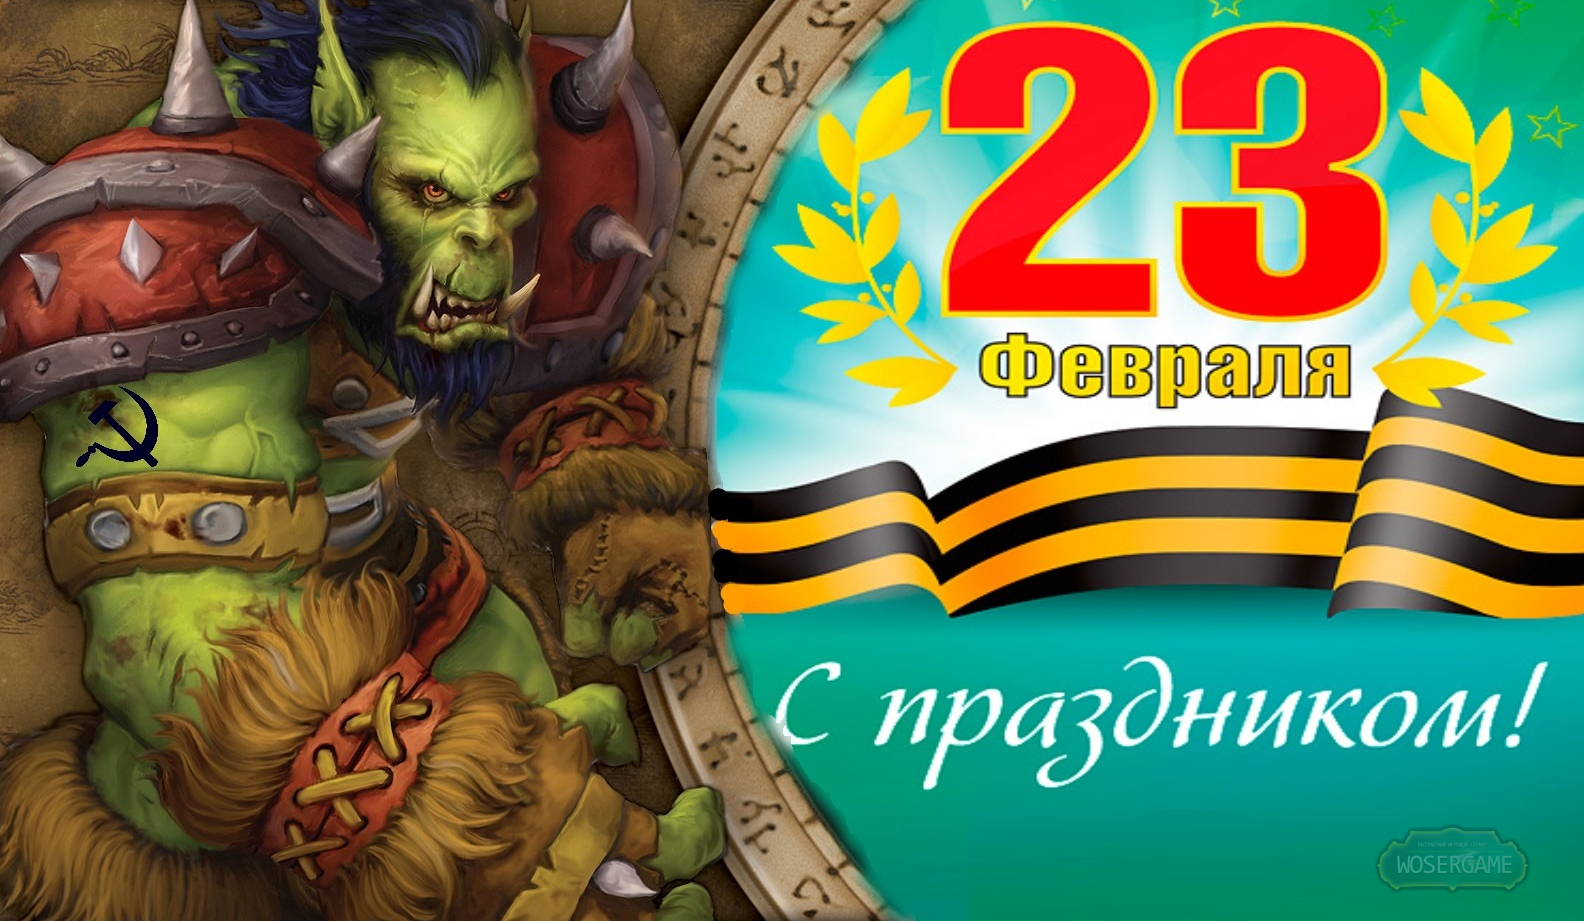 Поздравление дота 2. World of Warcraft 23 февраля. Поздравляю 23 февраля Warcraft. С 23 февраля wow. 23 Февраля варкрафт поздравления.